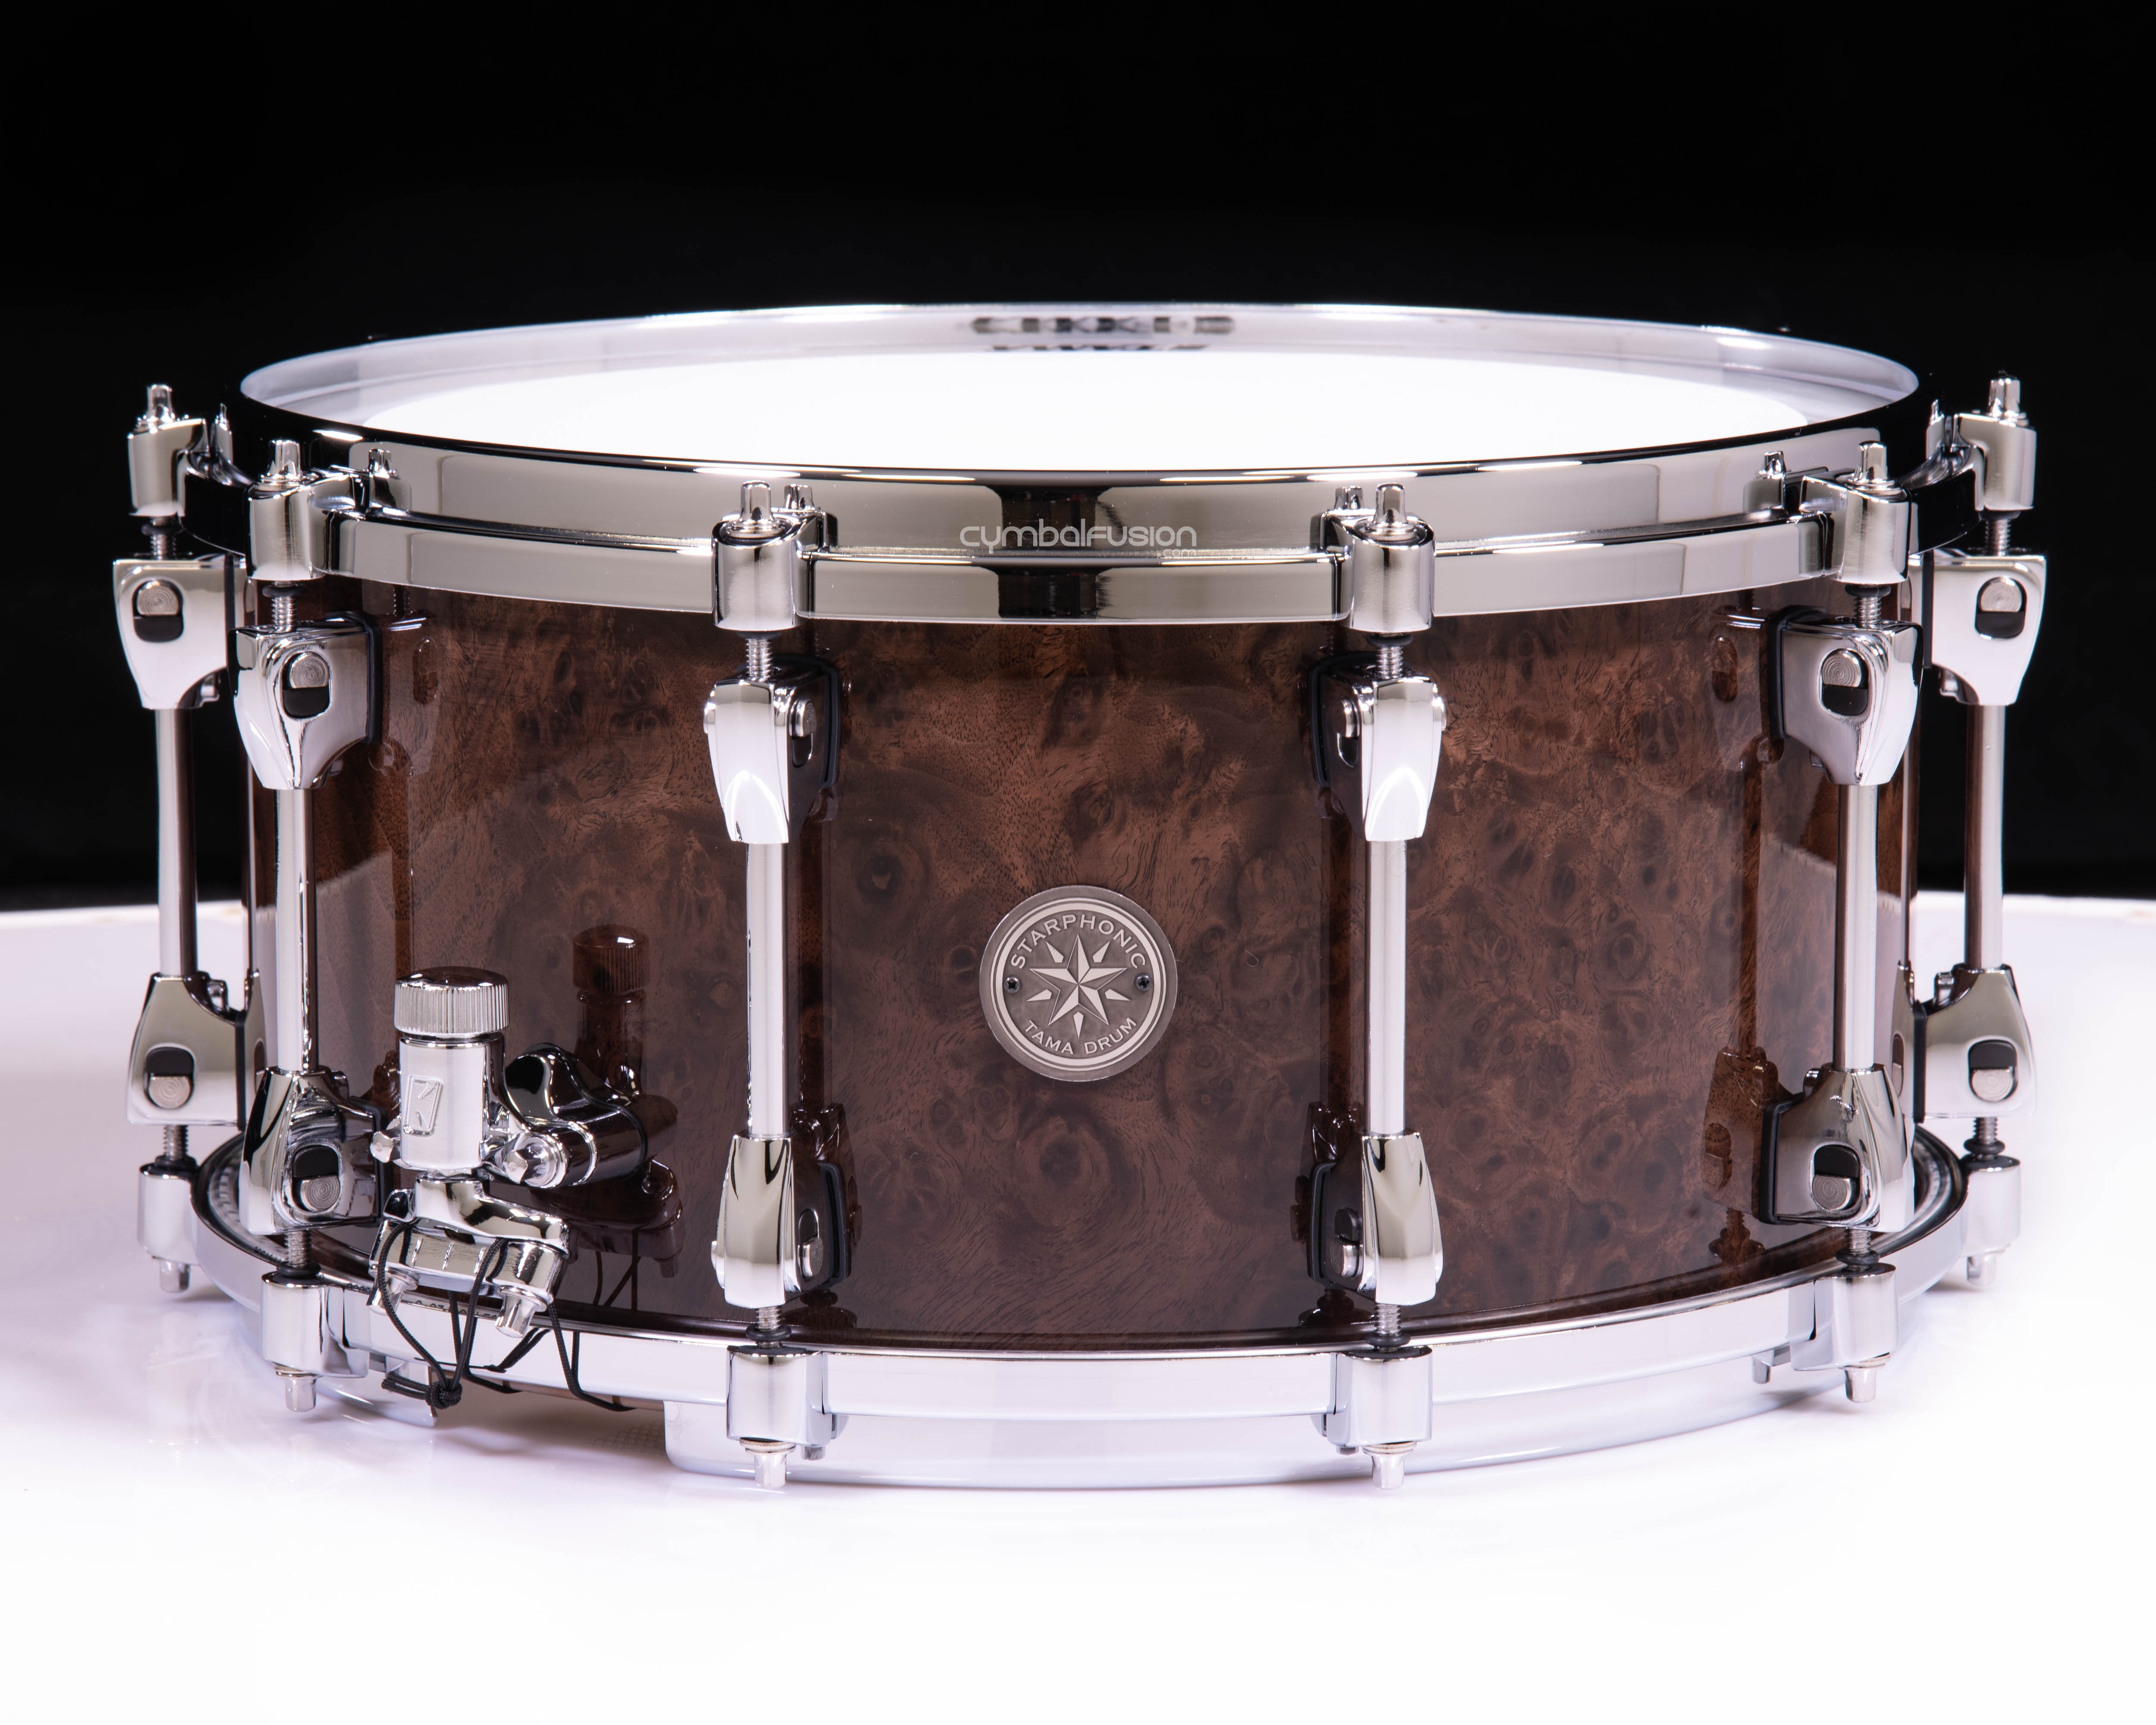 Tama Starphonic Walnut 14x7 Snare Drum - Gloss Black Walnut Burl